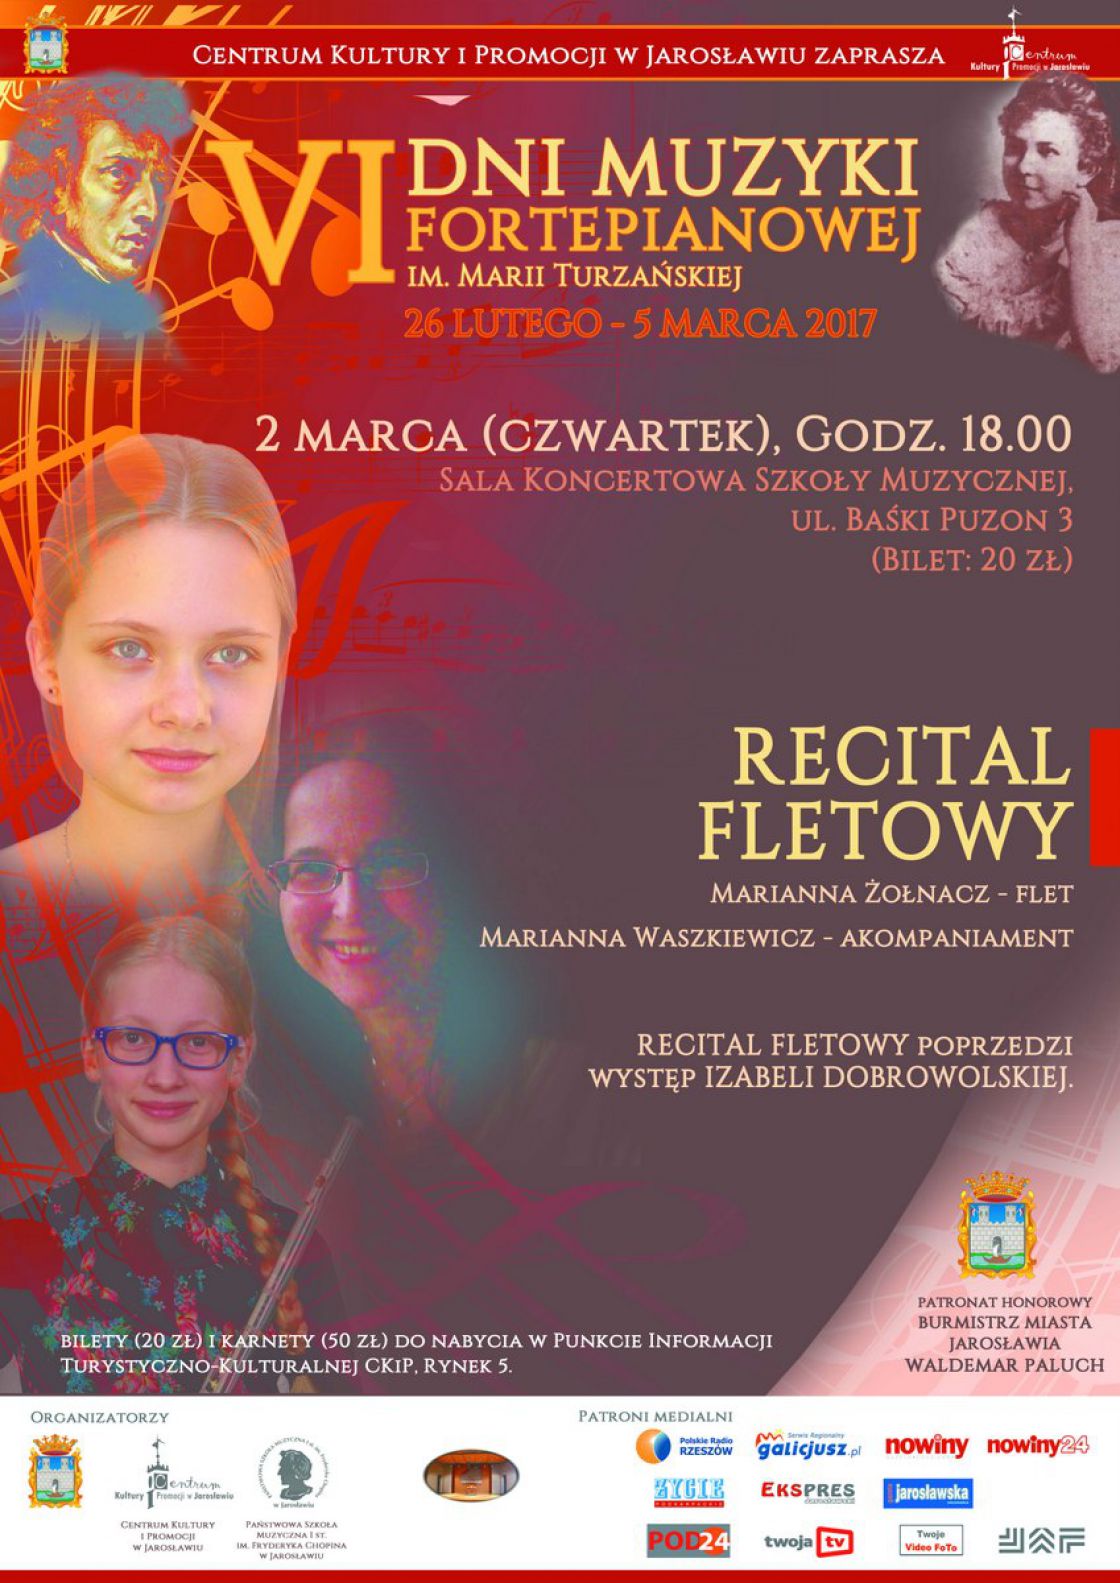 Recital fletowy w Jarosławiu